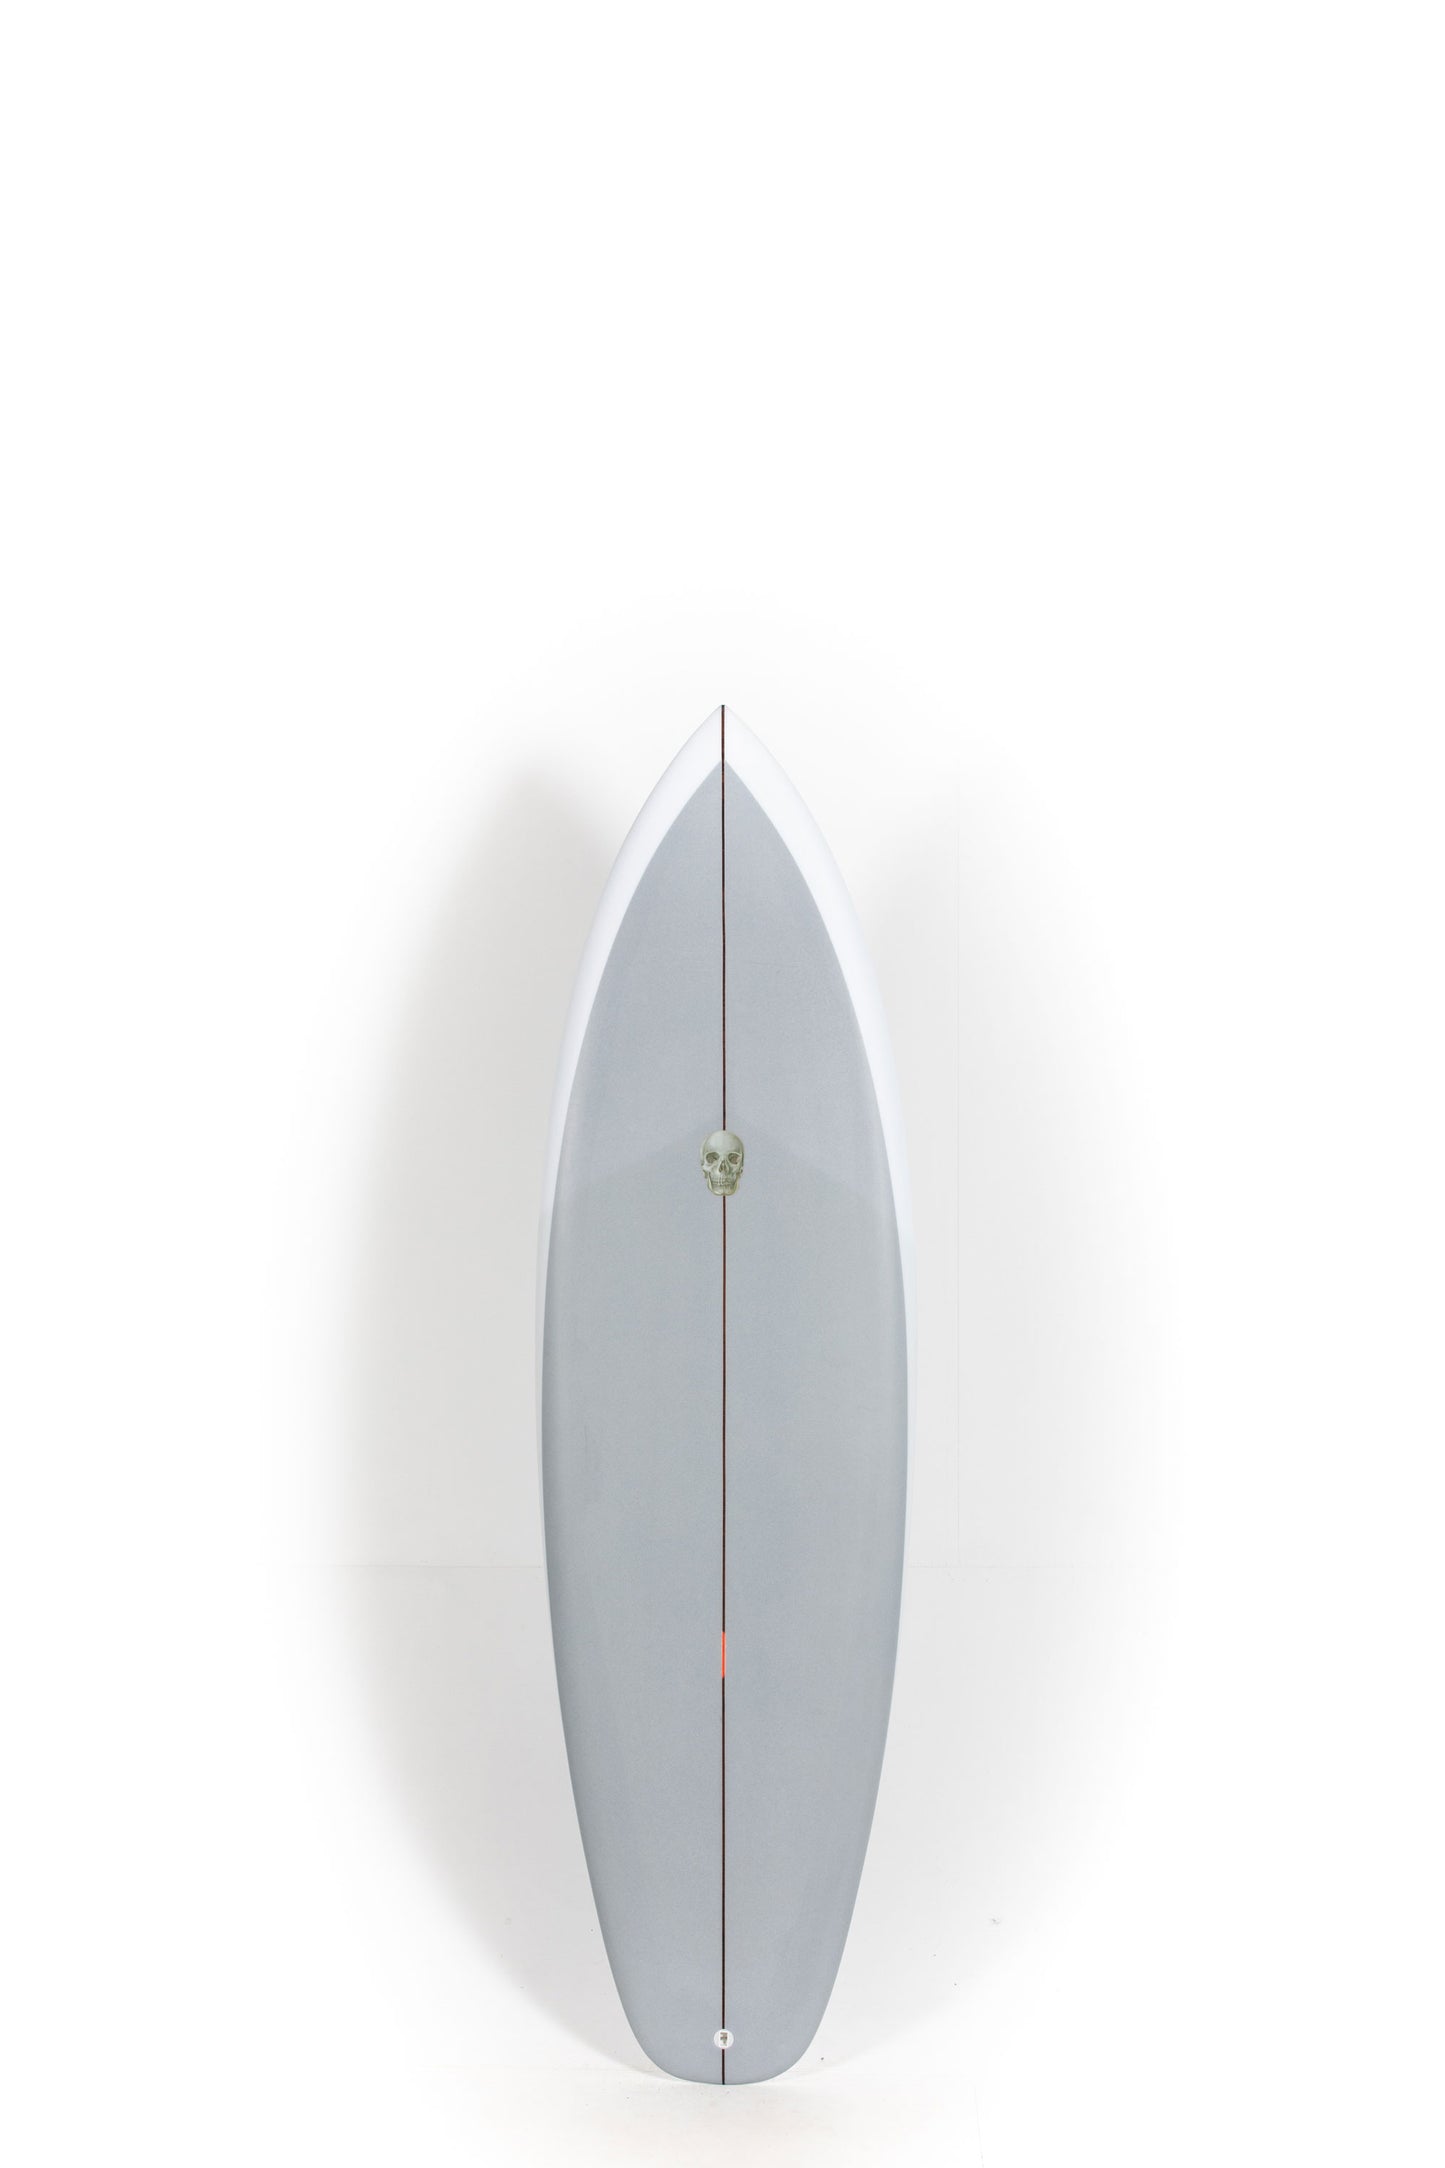 Pukas Surf Shop - Christenson Surfboard  - SURFER ROSA - 5'10” x 19 3/4 x 2 7/16 - CX05000